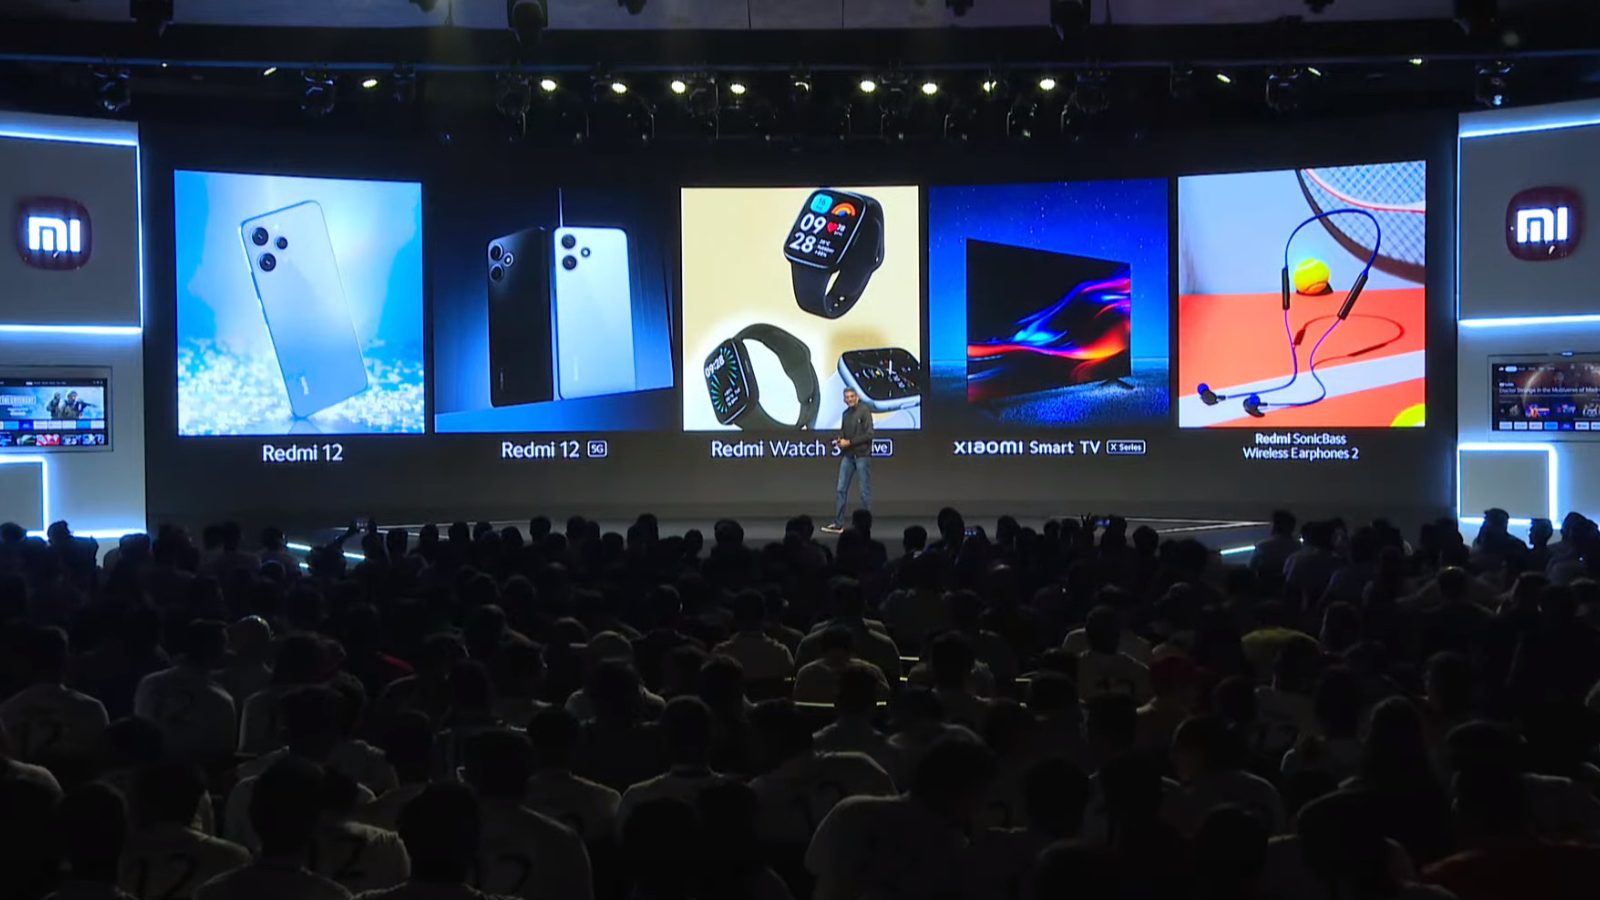 Встречайте четыре устройства Xiaomi, анонсированные сегодня в Индии